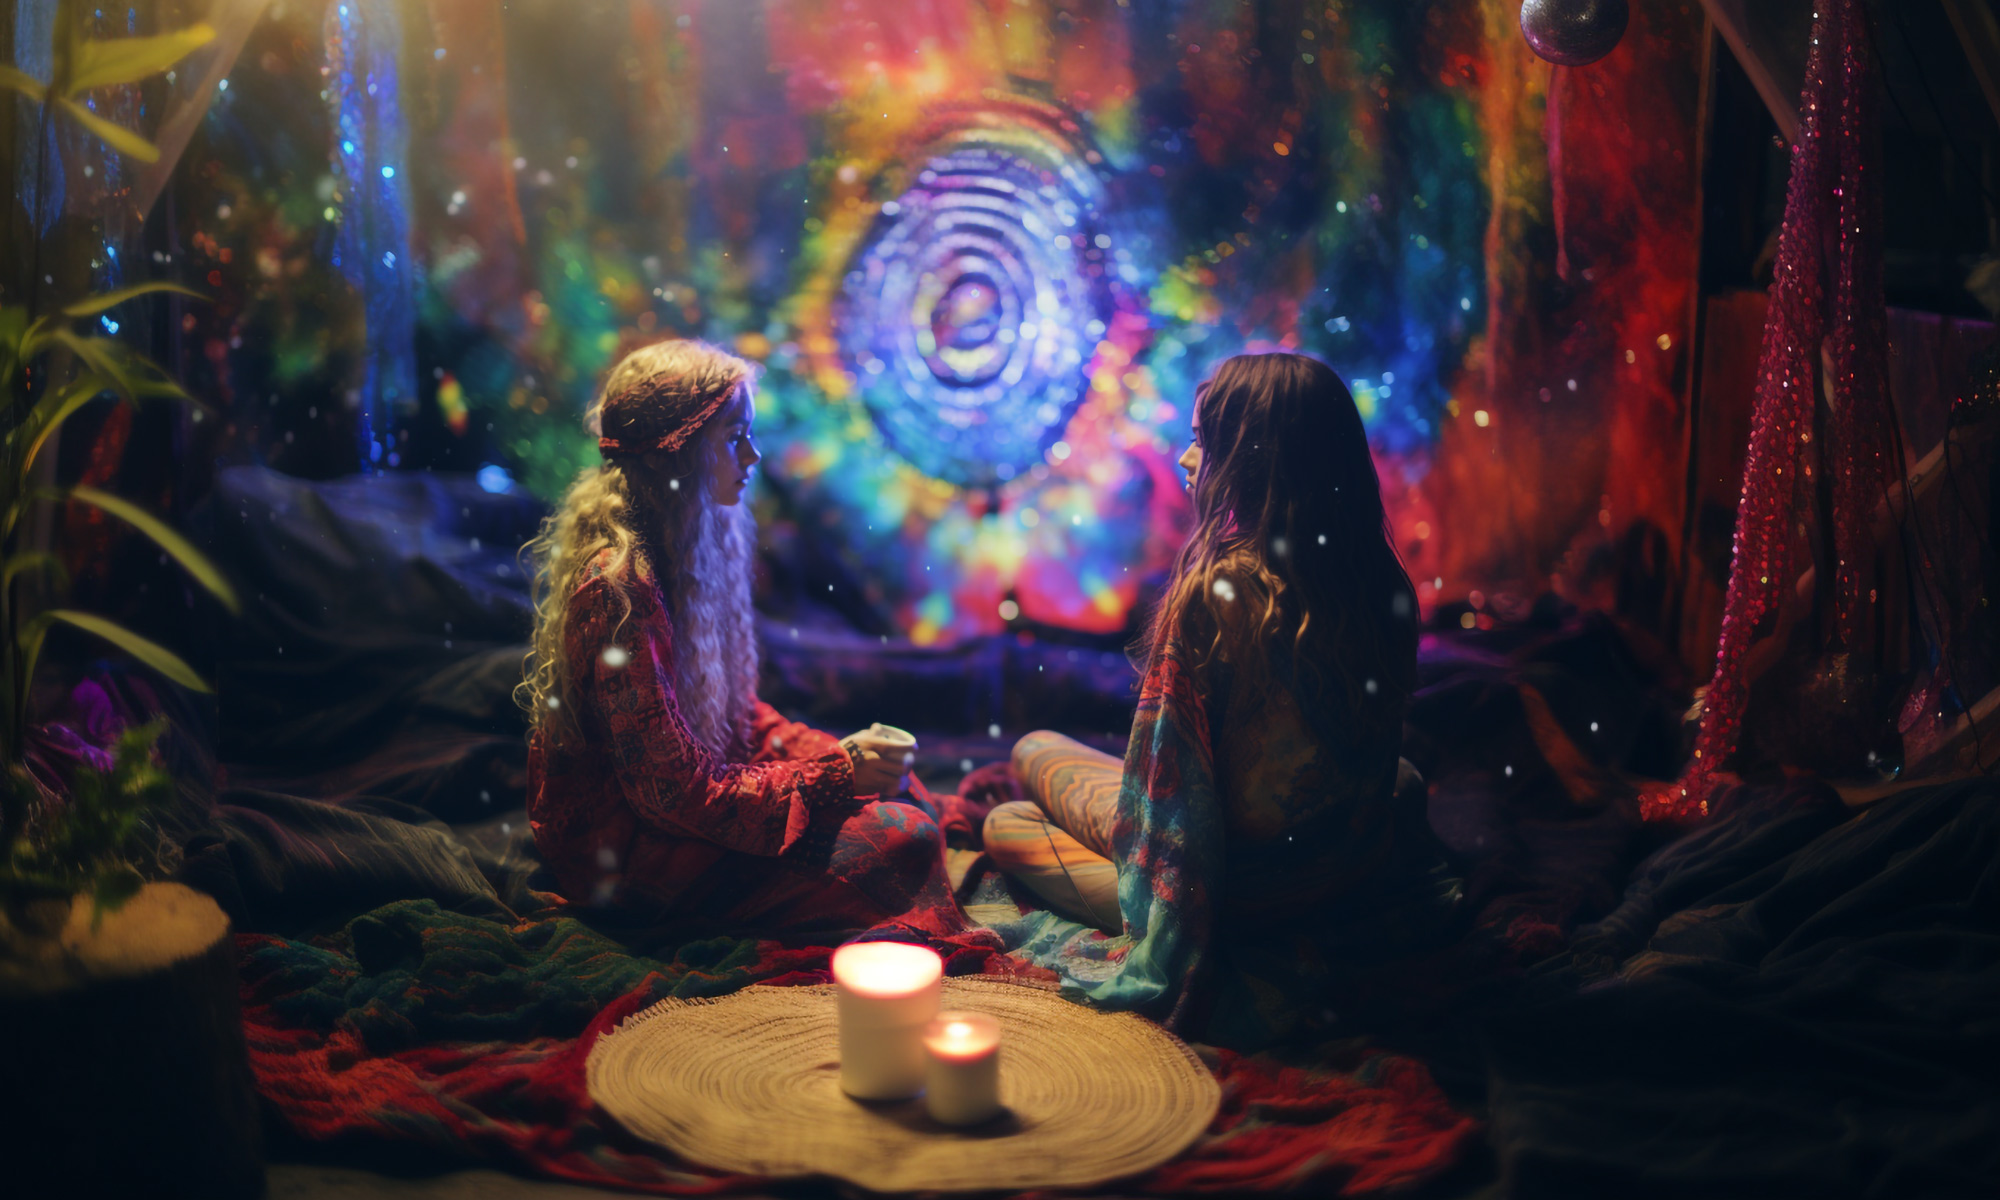 Twee jonge vrouwen tijdens een tripceremonie in kleurrijke psychedelische jaren '60 setting.